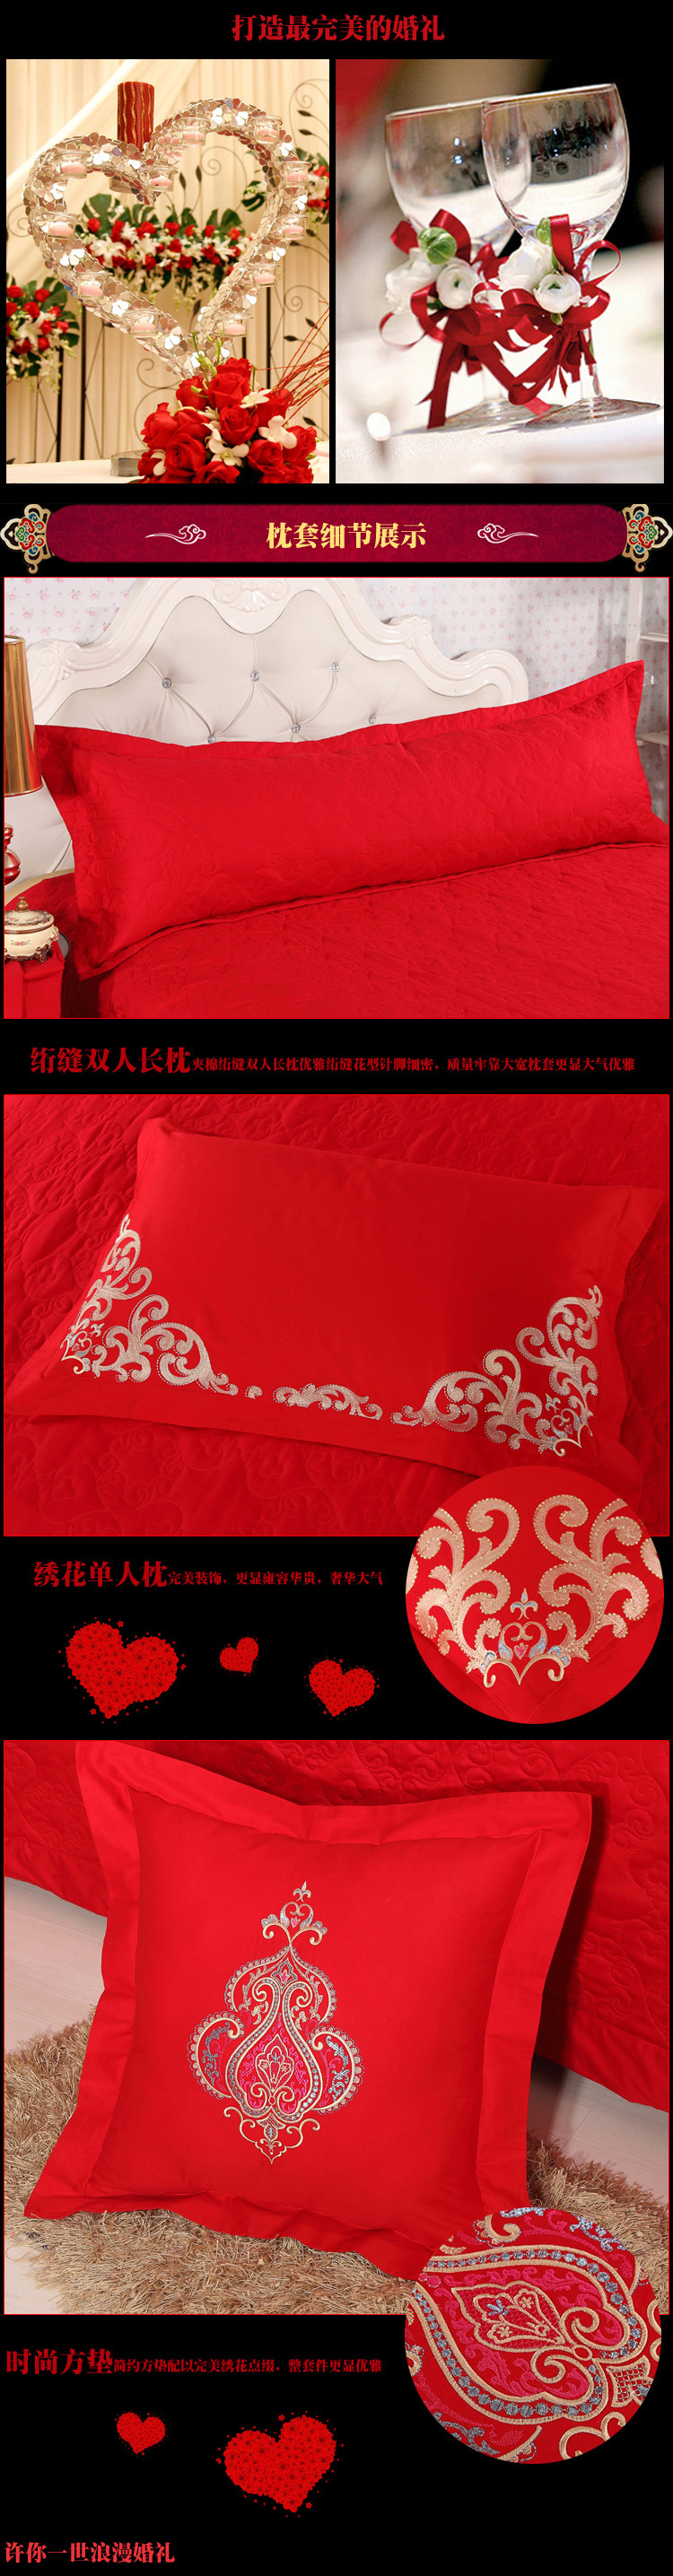 皇家婚礼-中国红描述1_04